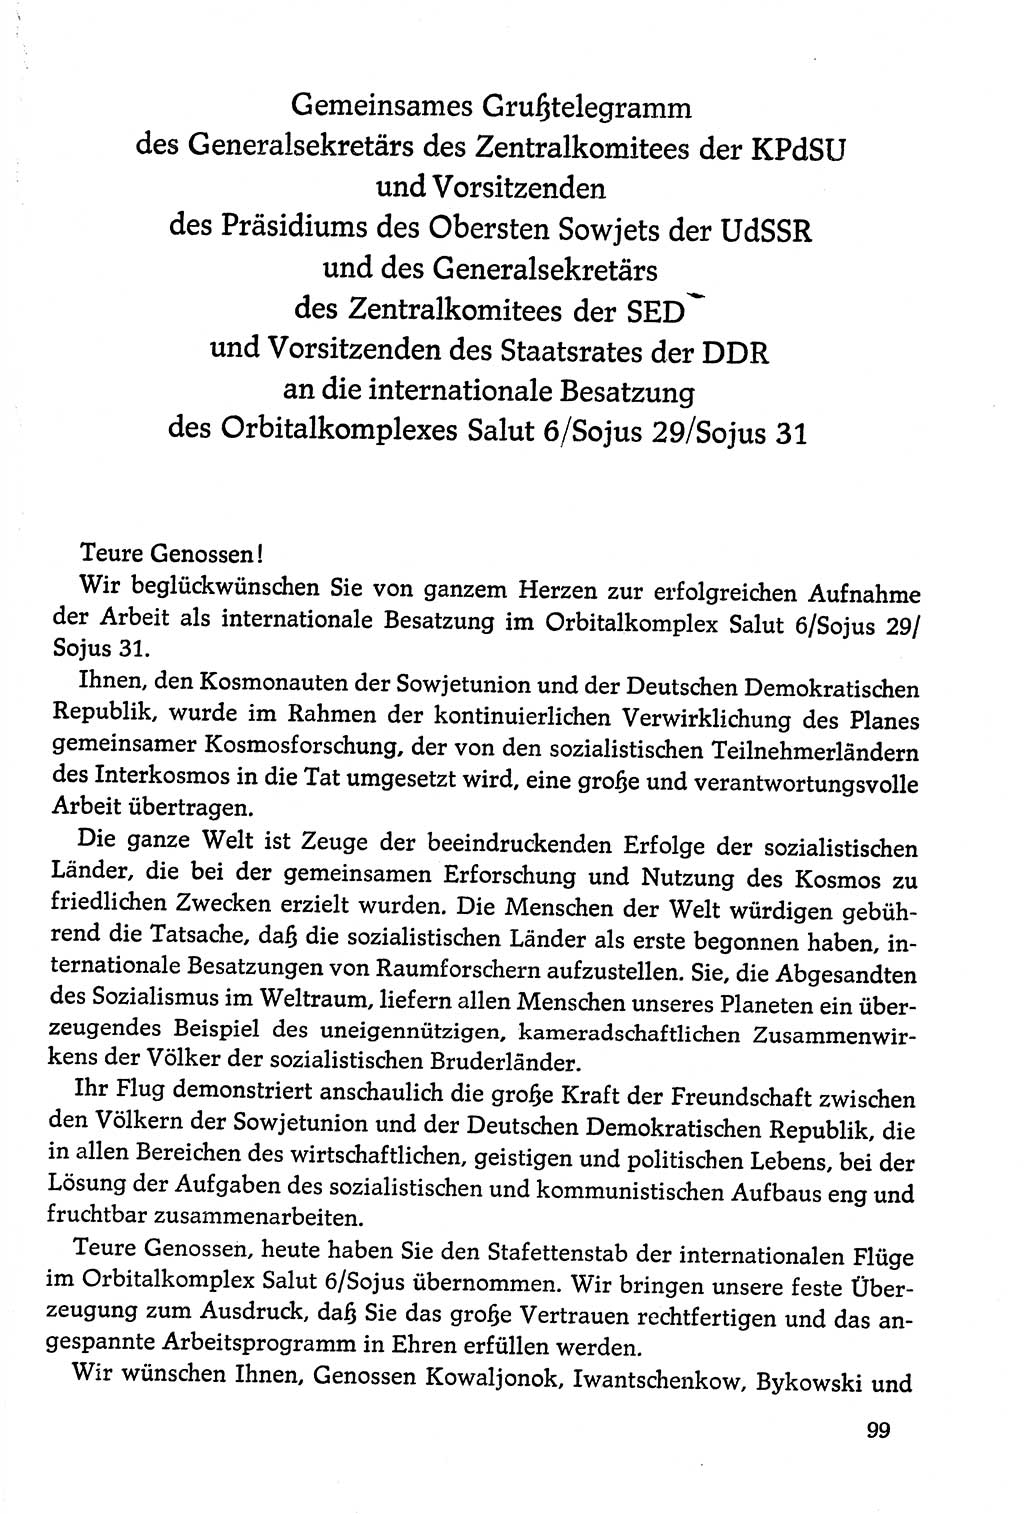 Dokumente der Sozialistischen Einheitspartei Deutschlands (SED) [Deutsche Demokratische Republik (DDR)] 1978-1979, Seite 99 (Dok. SED DDR 1978-1979, S. 99)